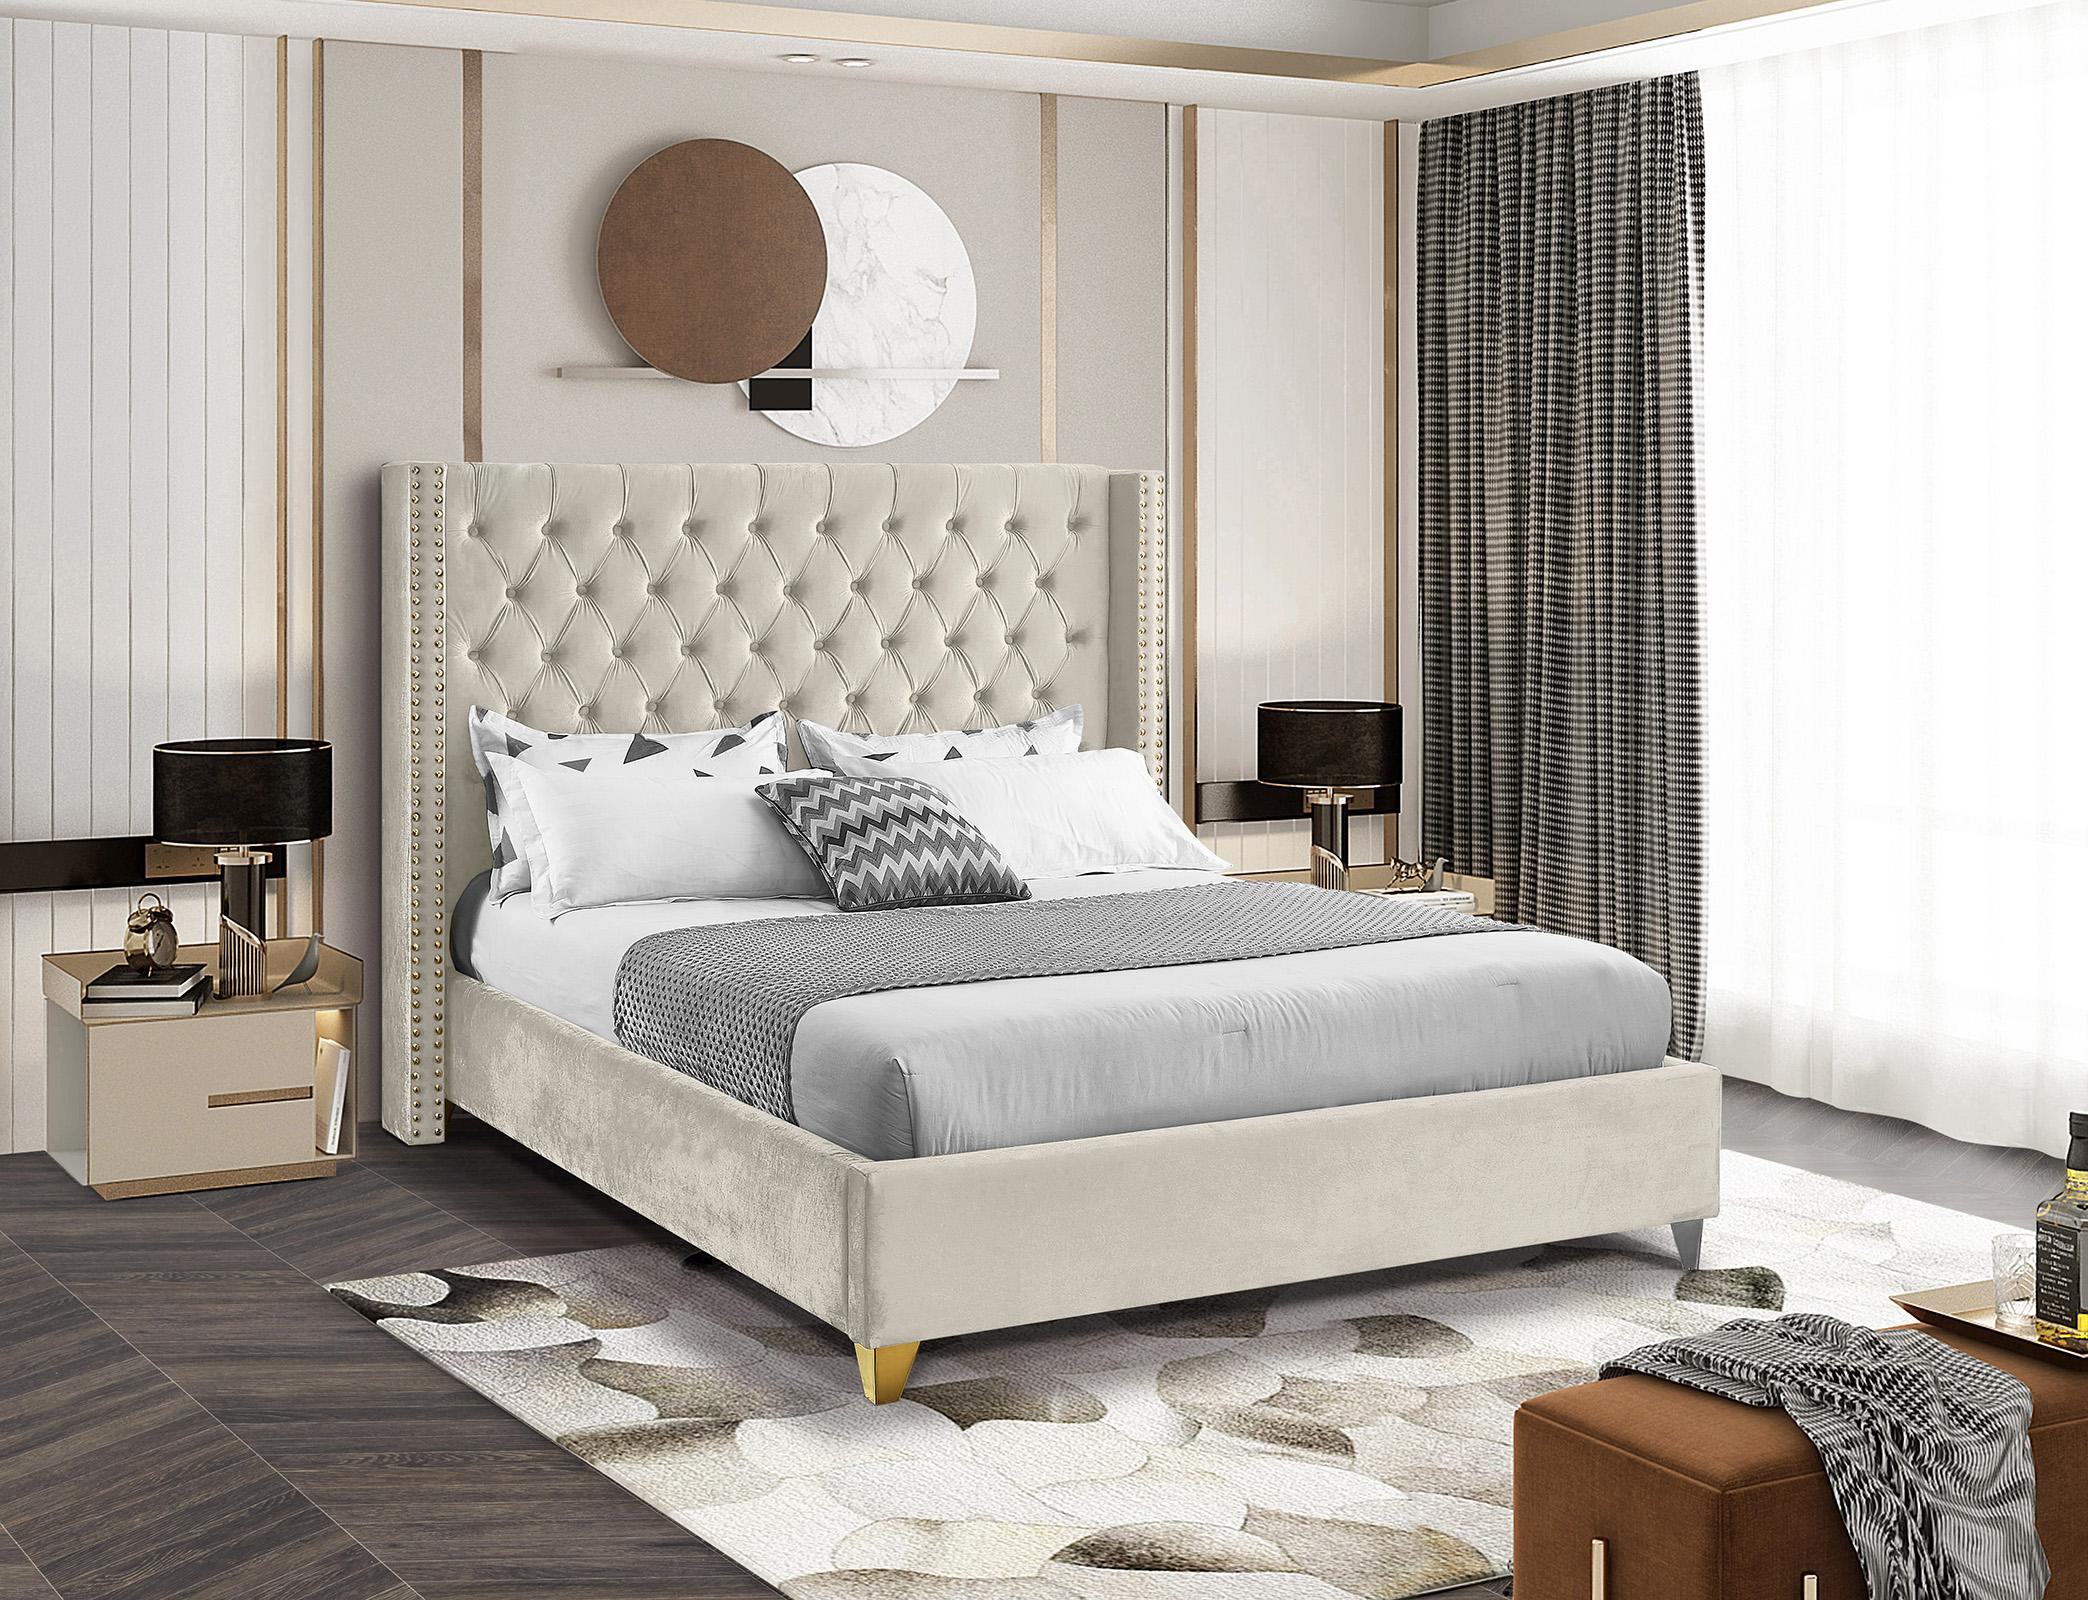 

    
BaroloCream-F Meridian Furniture Platform Bed
